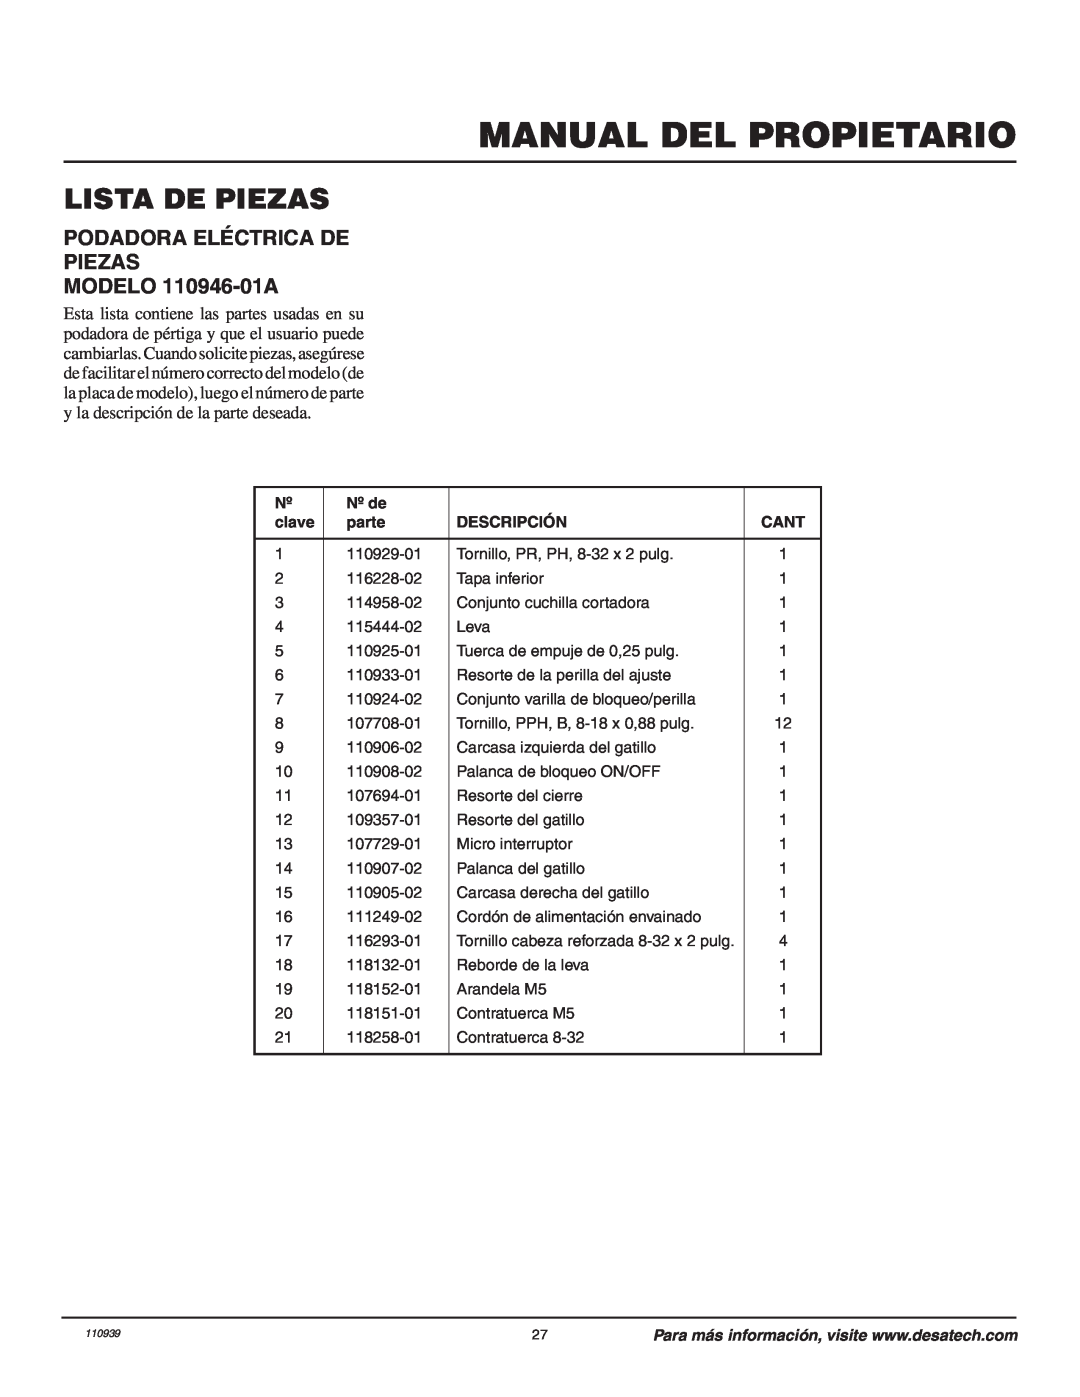 Desa Lista De Piezas, PODADORA ELÉCTRICA DE PIEZAS MODELO 110946-01A, Manual Del Propietario, Nº de, clave, parte, Cant 